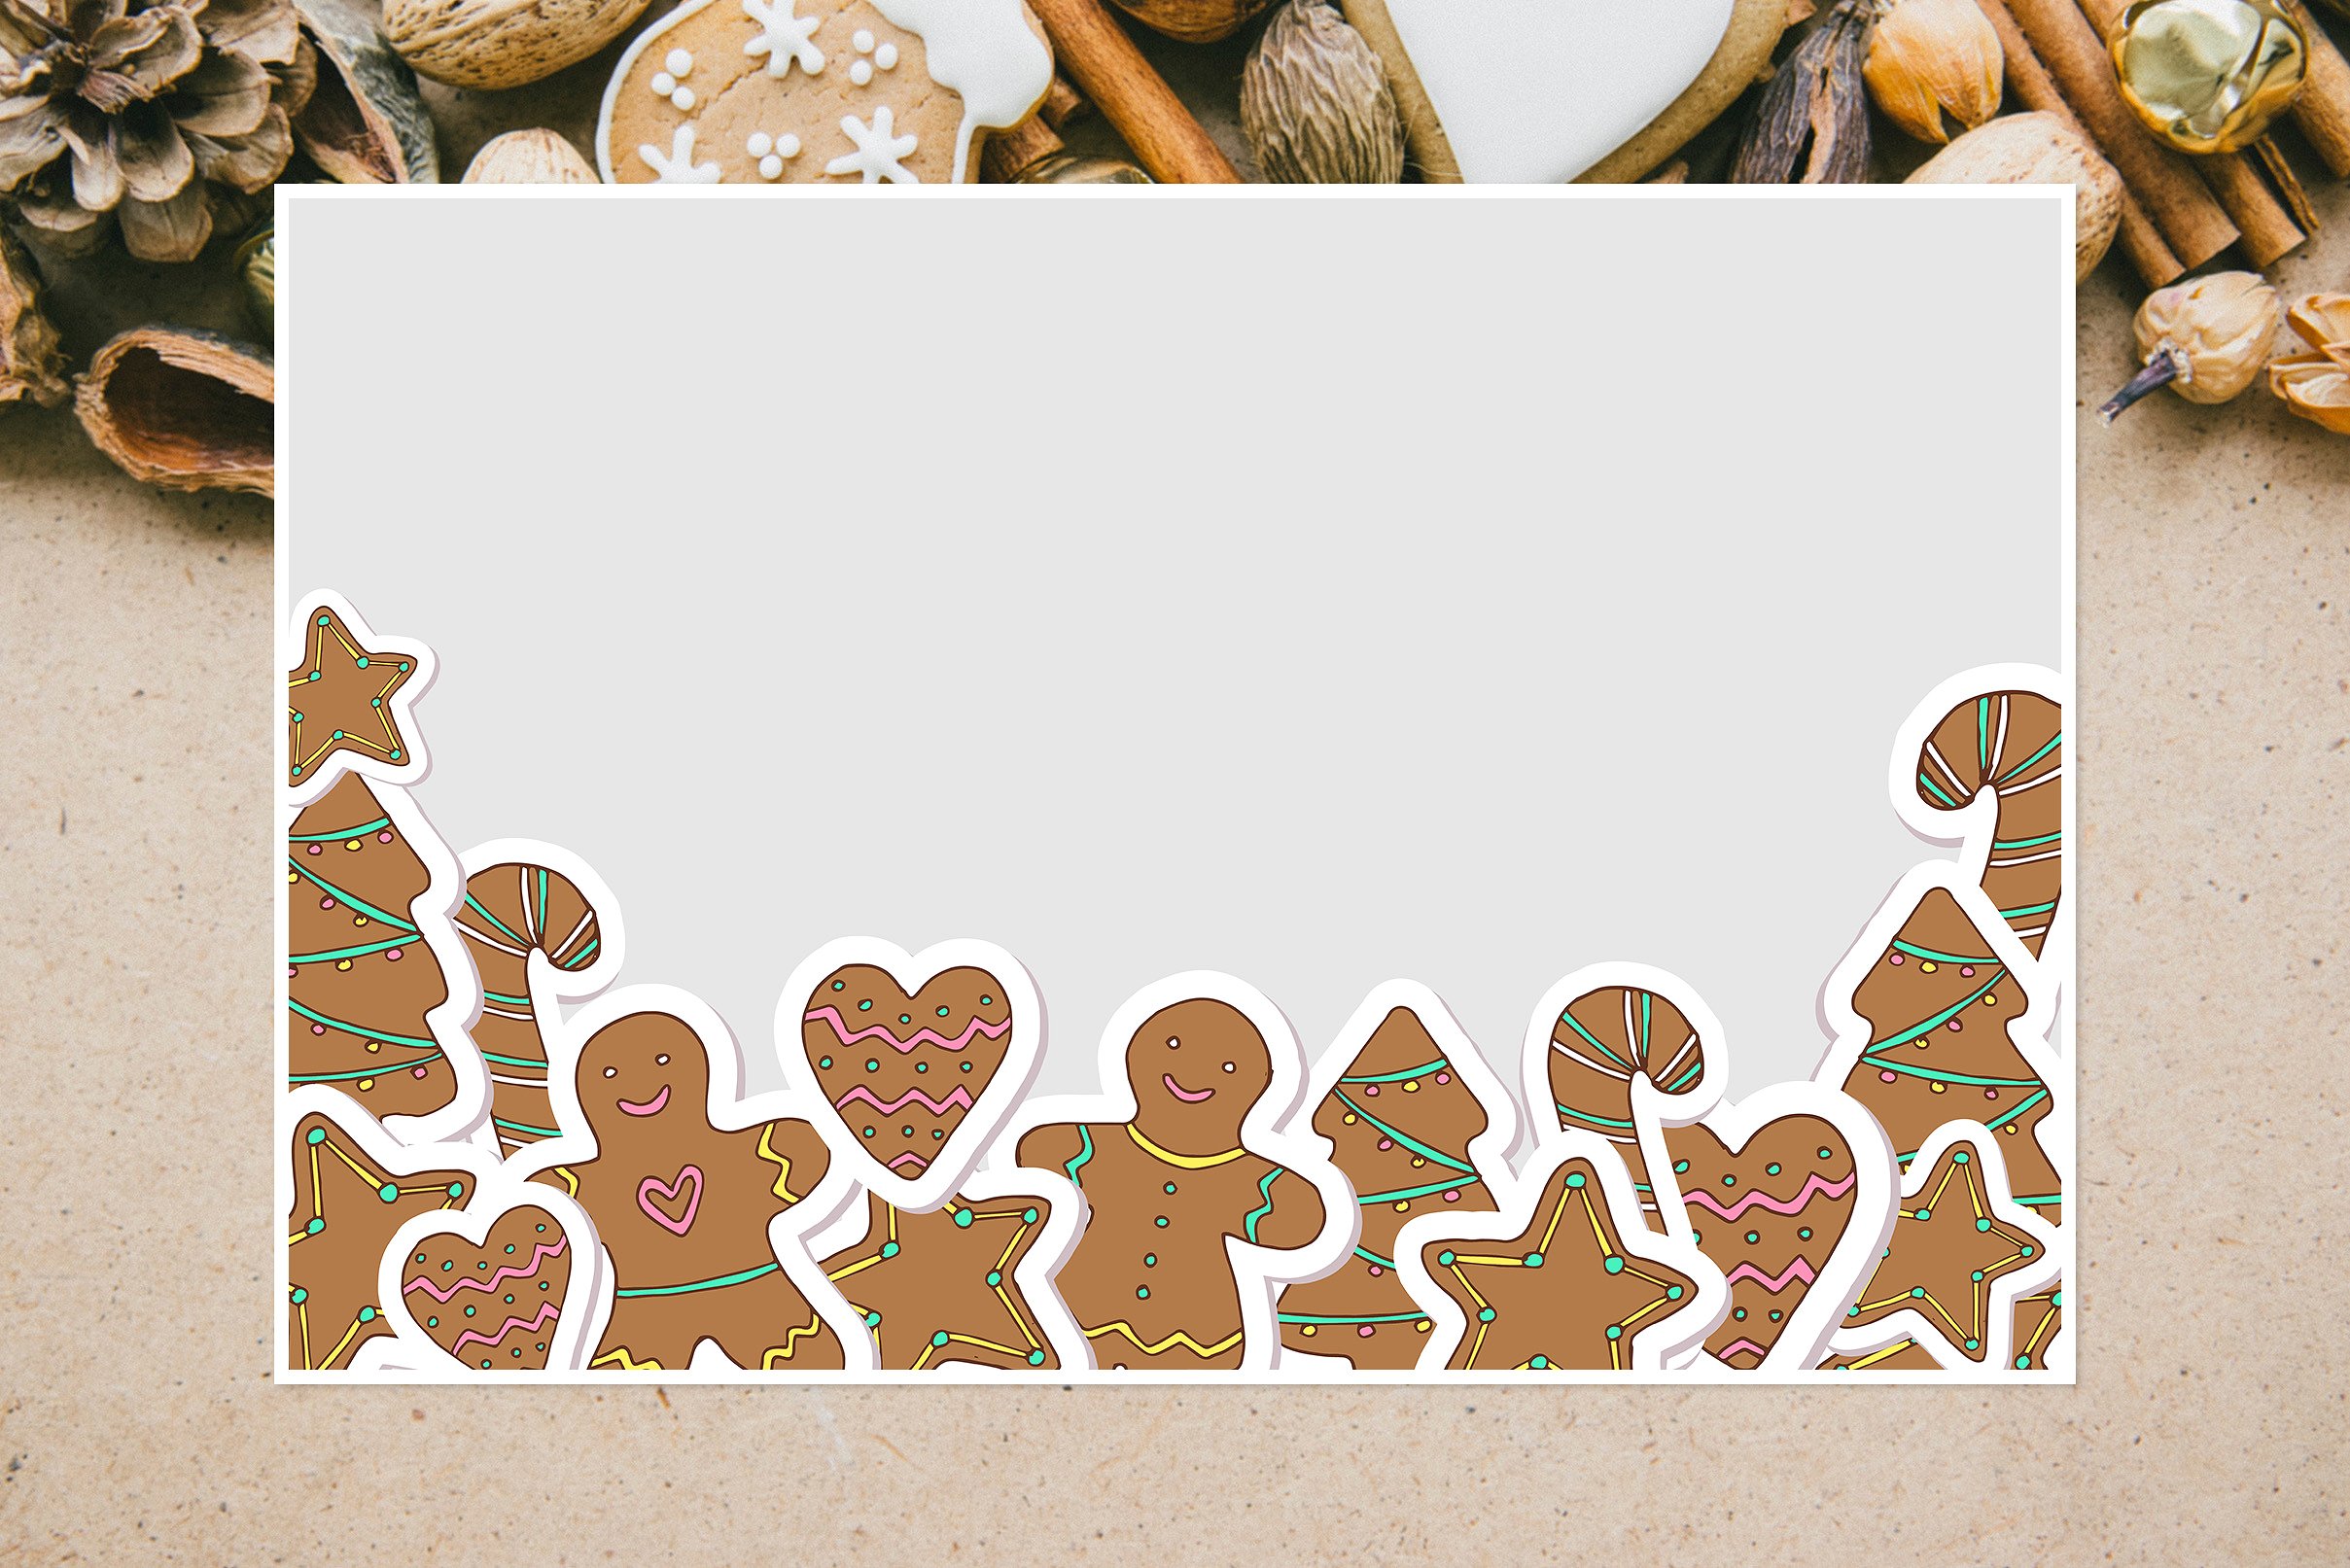 可爱的圣诞节手绘饼干矢量素材下载[ai,eps]插图3